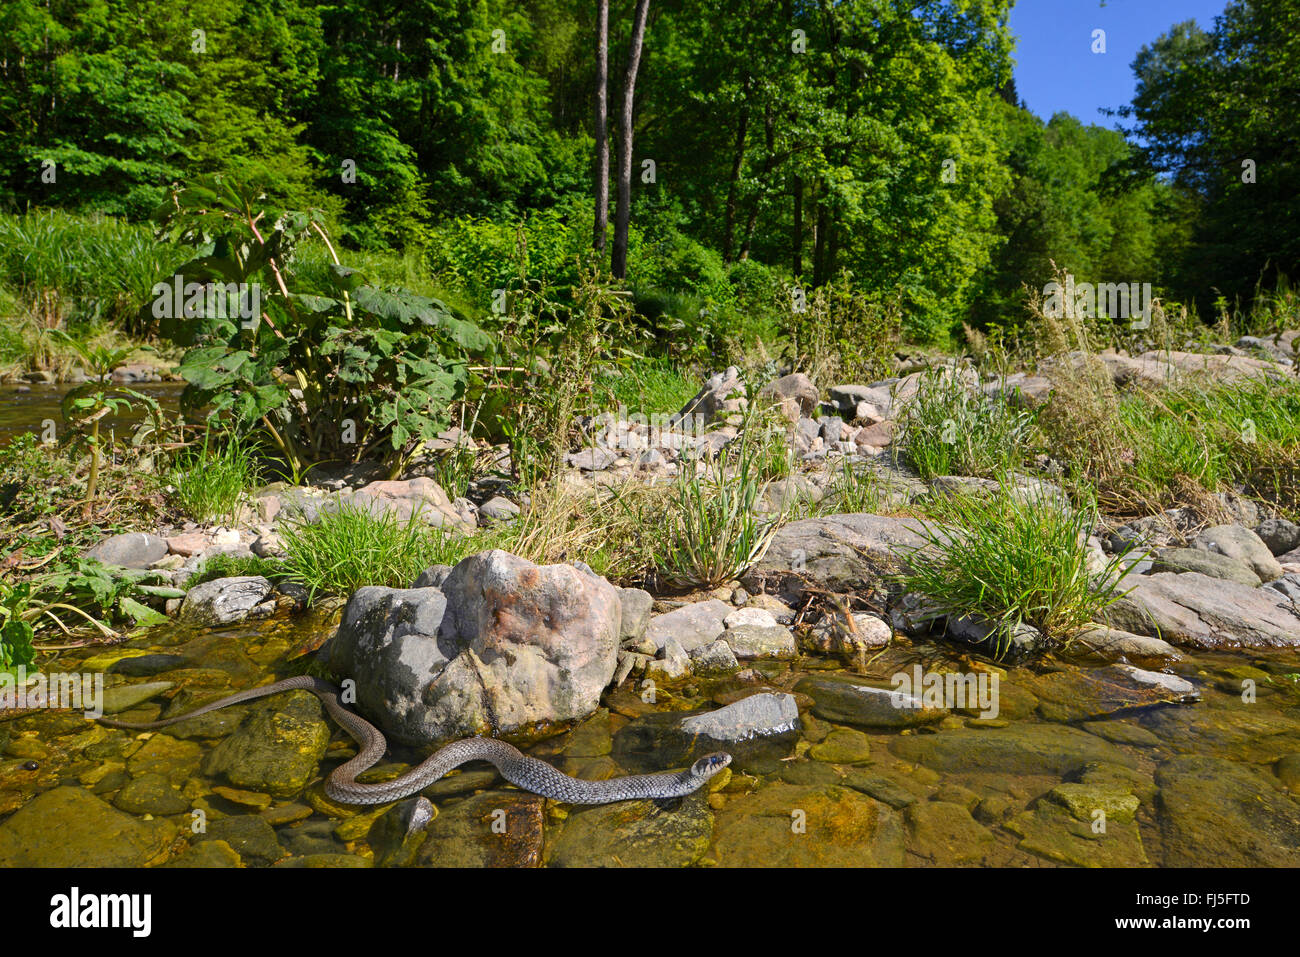 Couleuvre à collier (Natrix natrix), traversant une rivière, la baignade en eau peu profonde, l'Allemagne, la Bavière, le Parc National de la Forêt bavaroise Banque D'Images